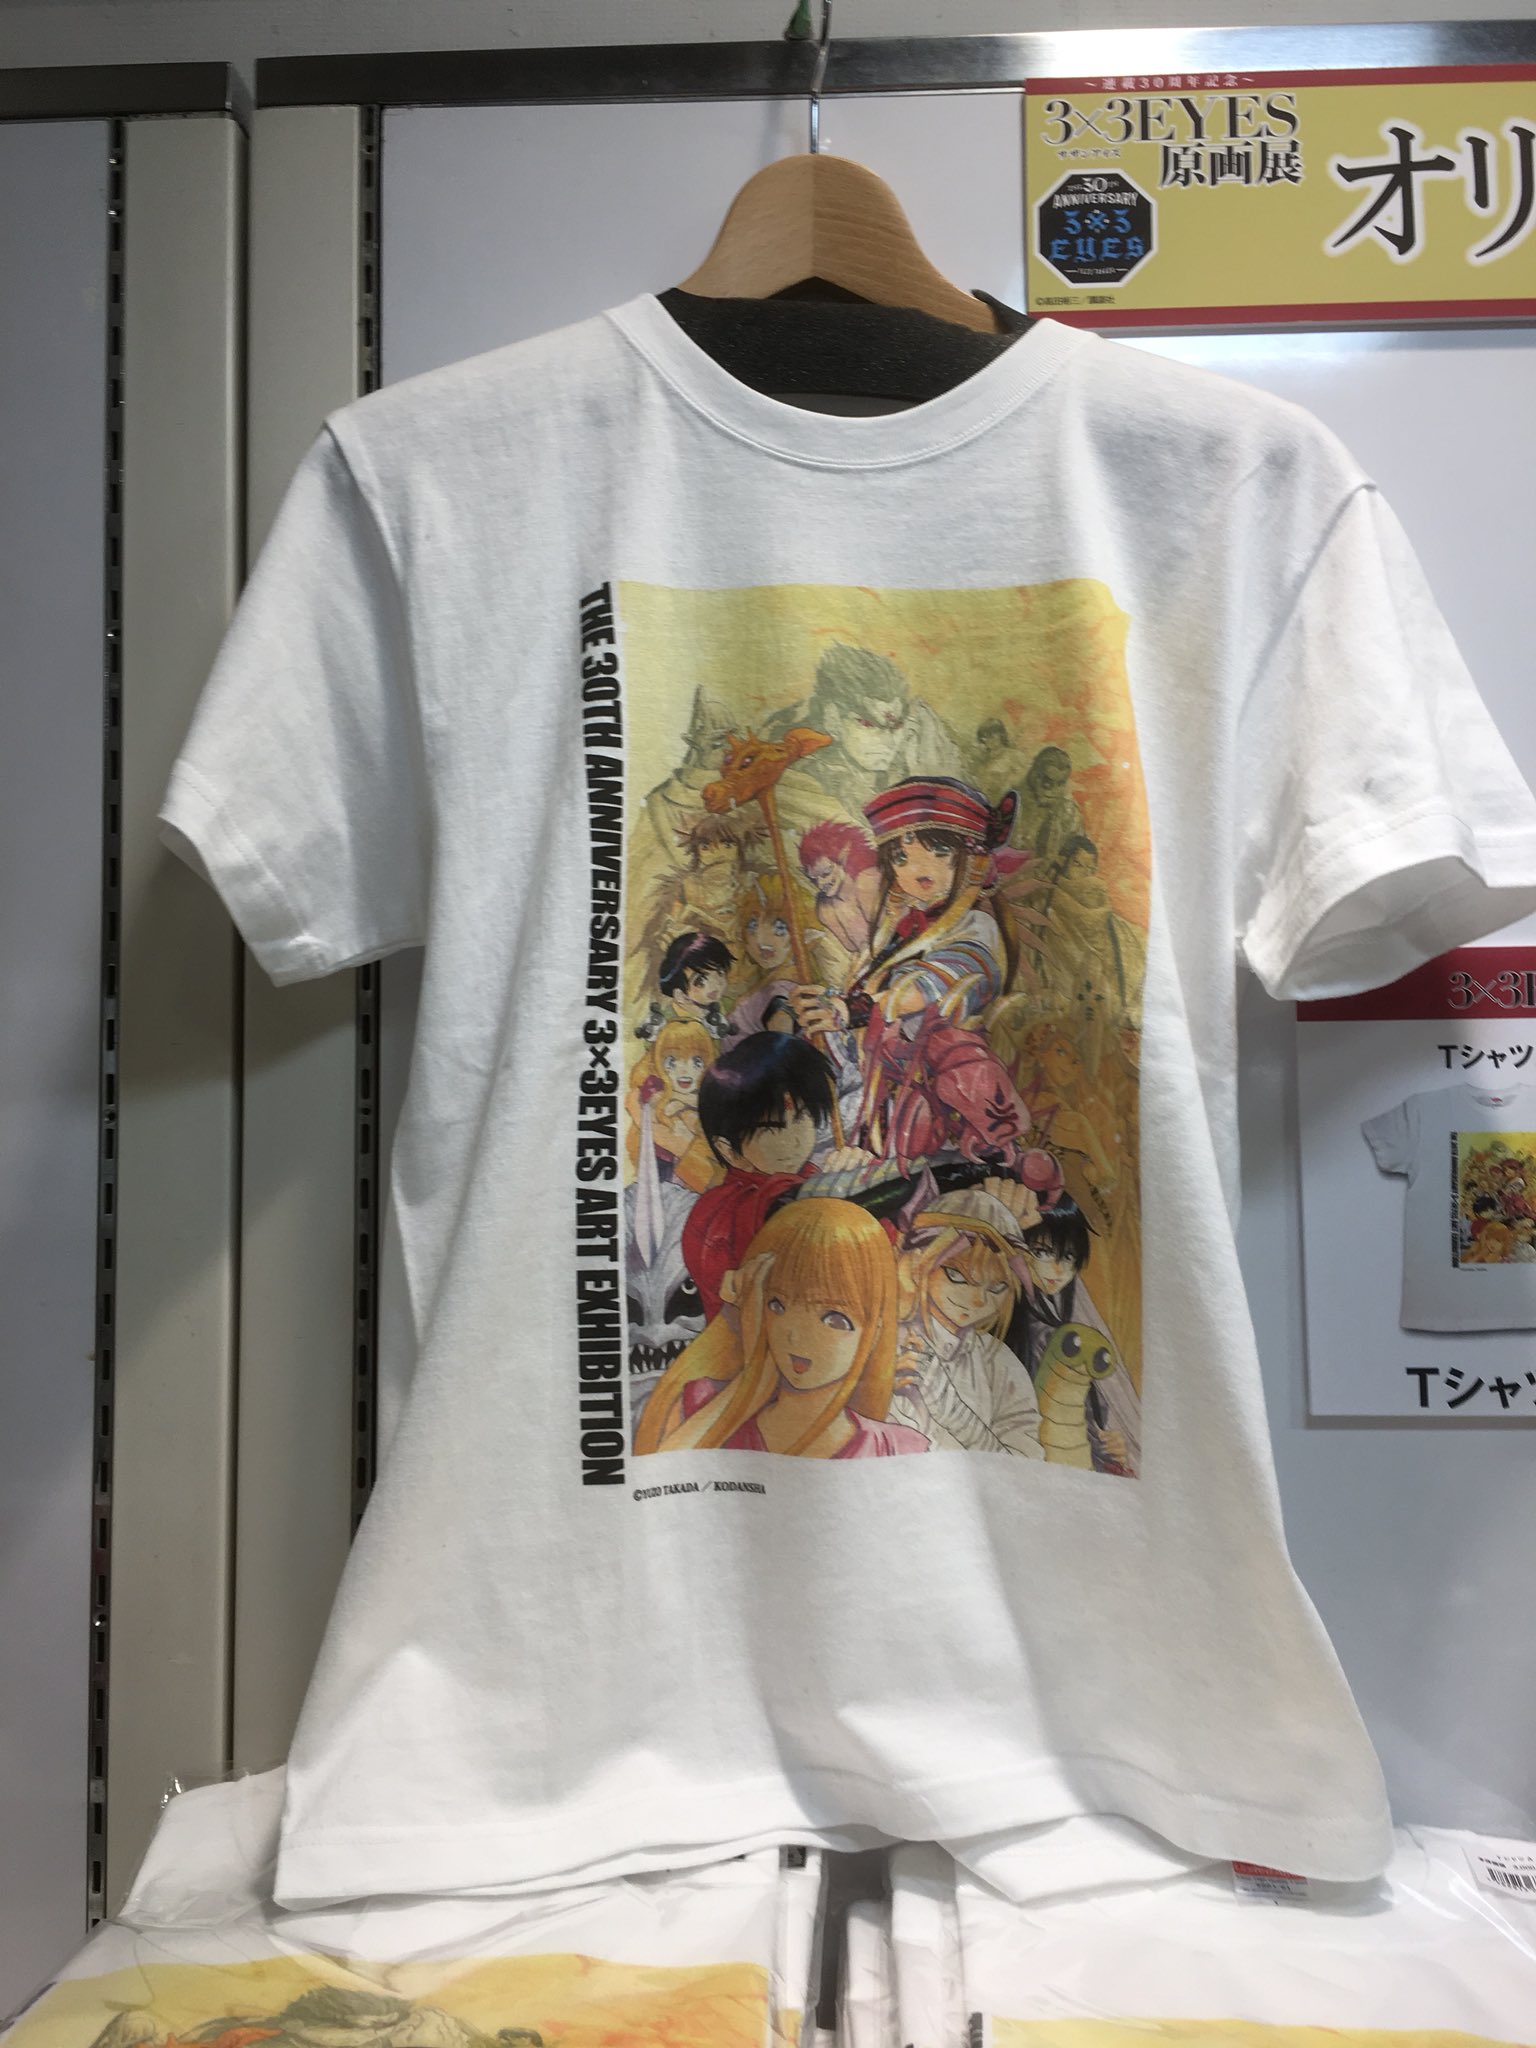 サザンアイズ 3×3EYES 原画展 Tシャツ 30周年 30th 高田裕三